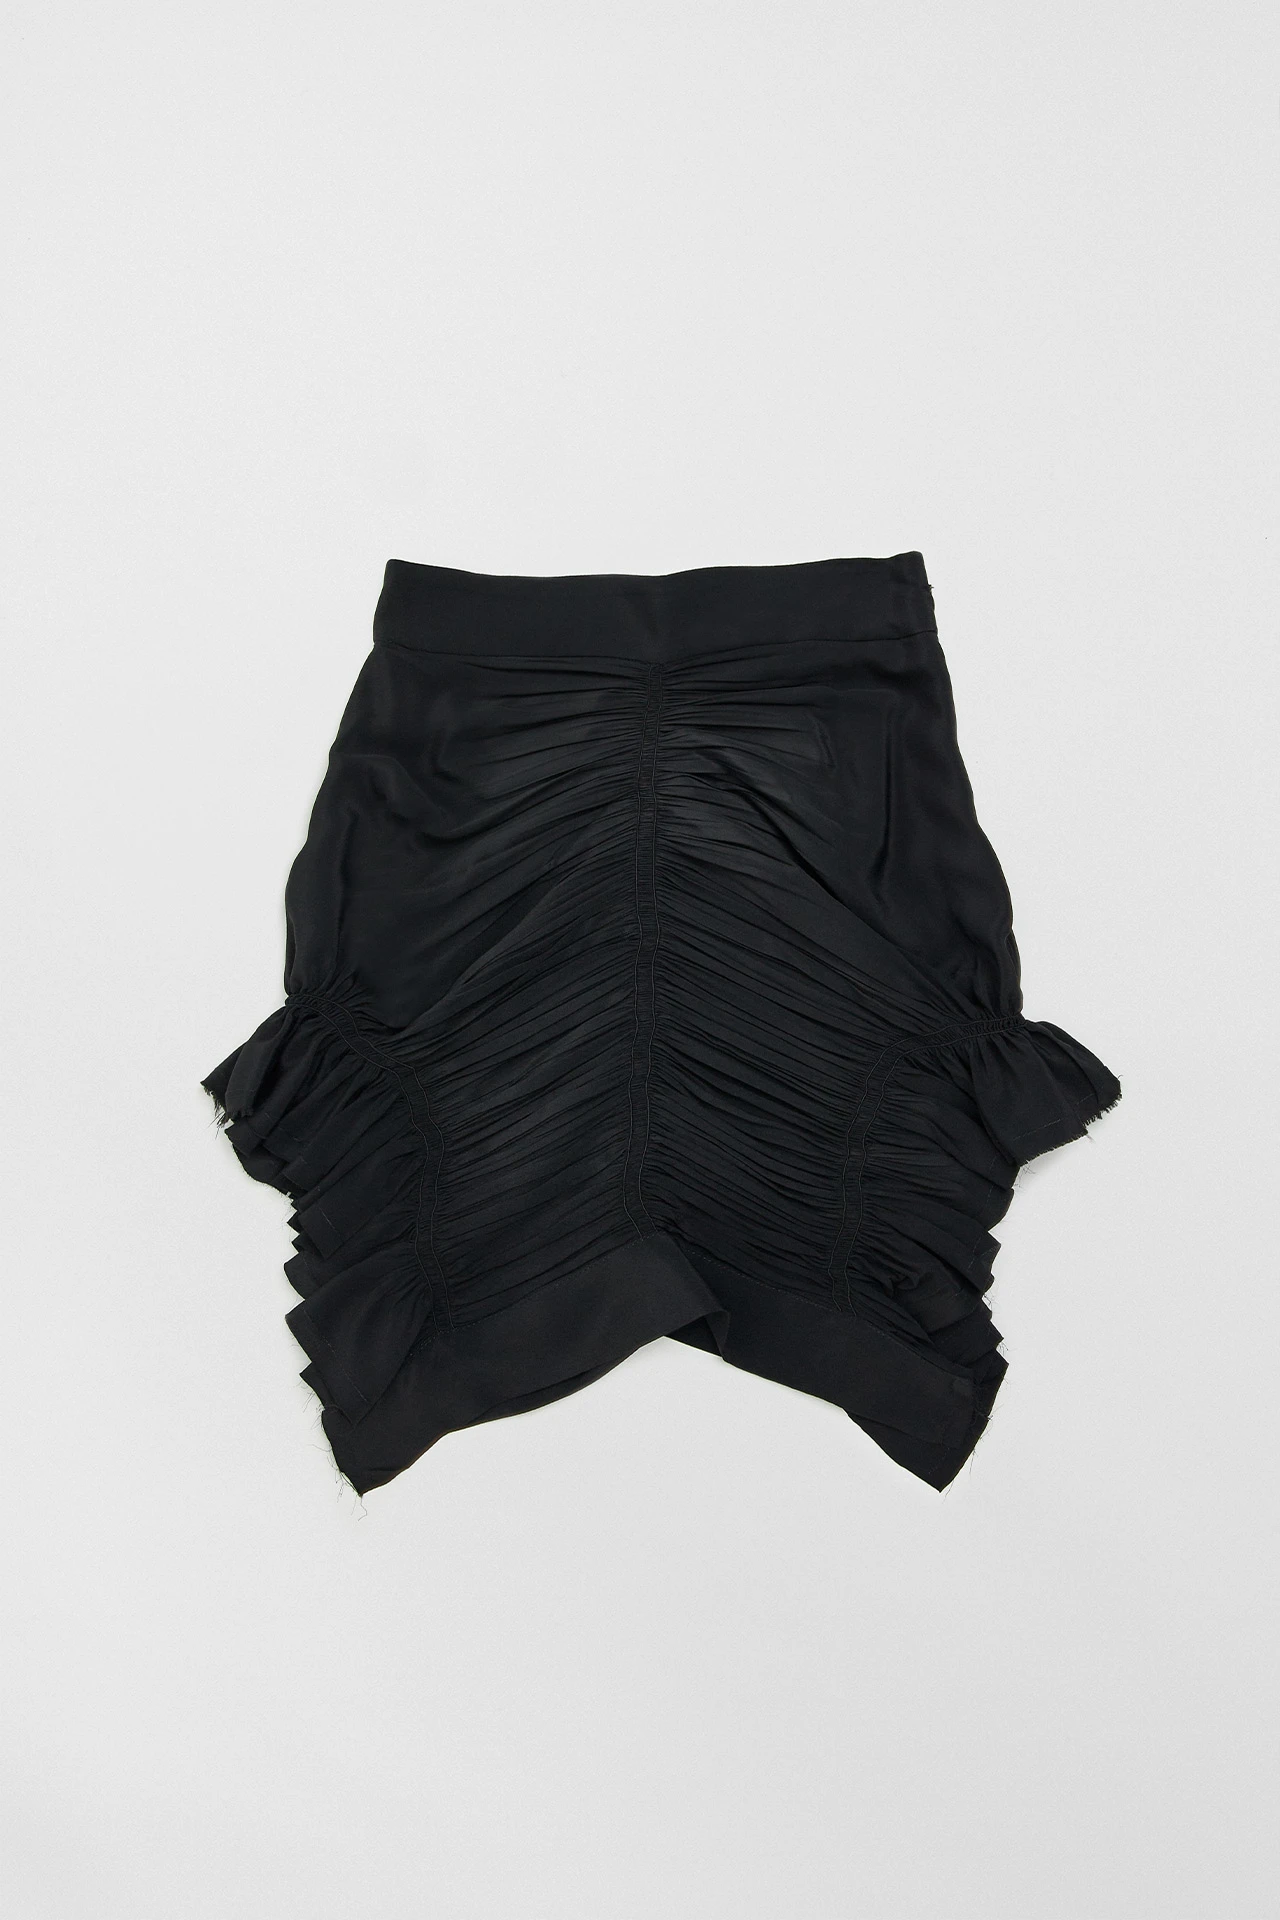 Miista-aiko-black-skirt-01